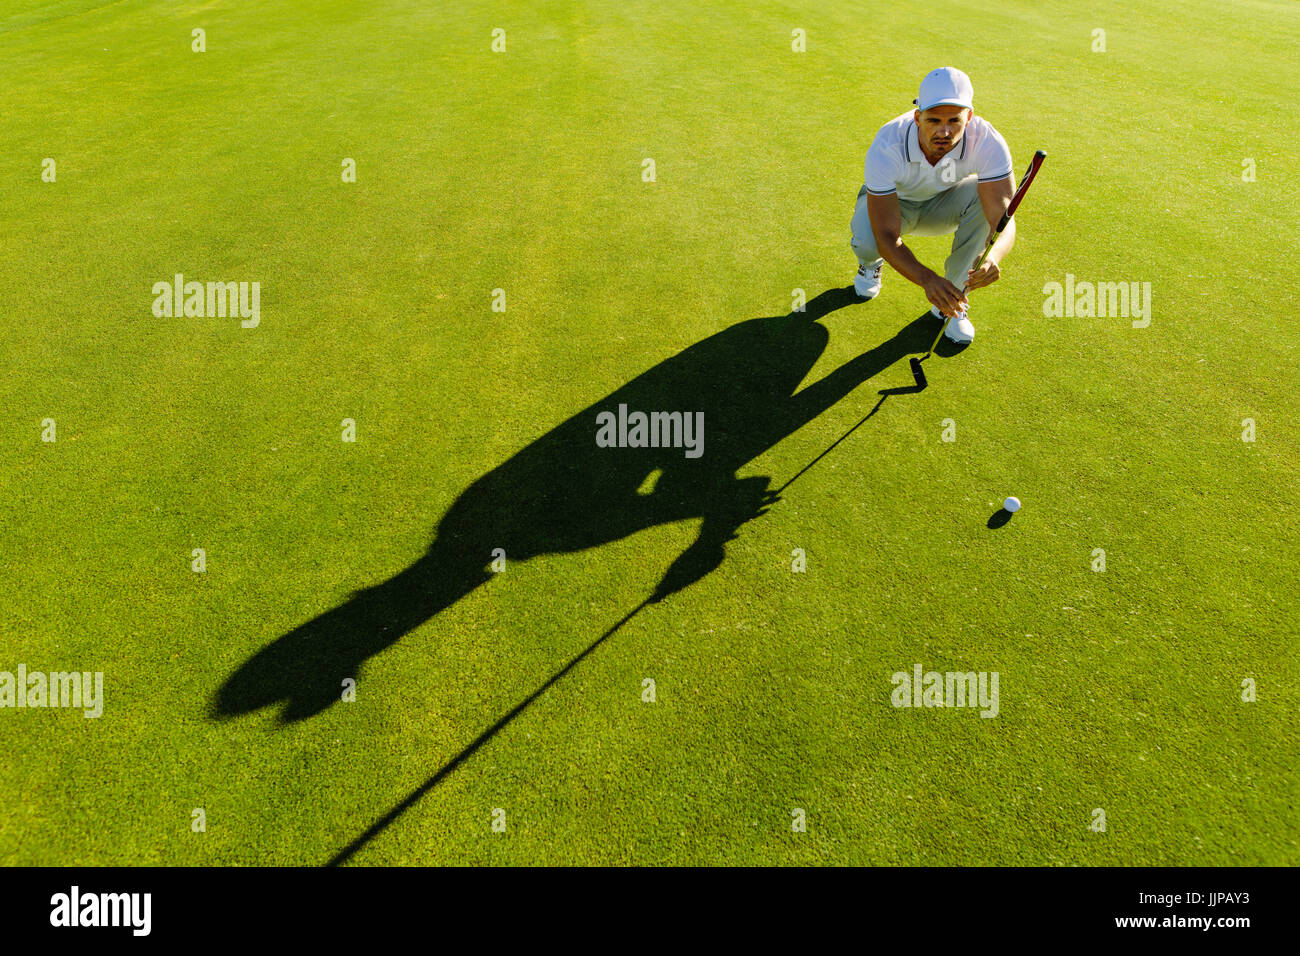 Giocatore di Golf Shot di puntamento con club in corso. Golfista maschio della linea di controllo per mettere la pallina da golf su erba verde. Foto Stock